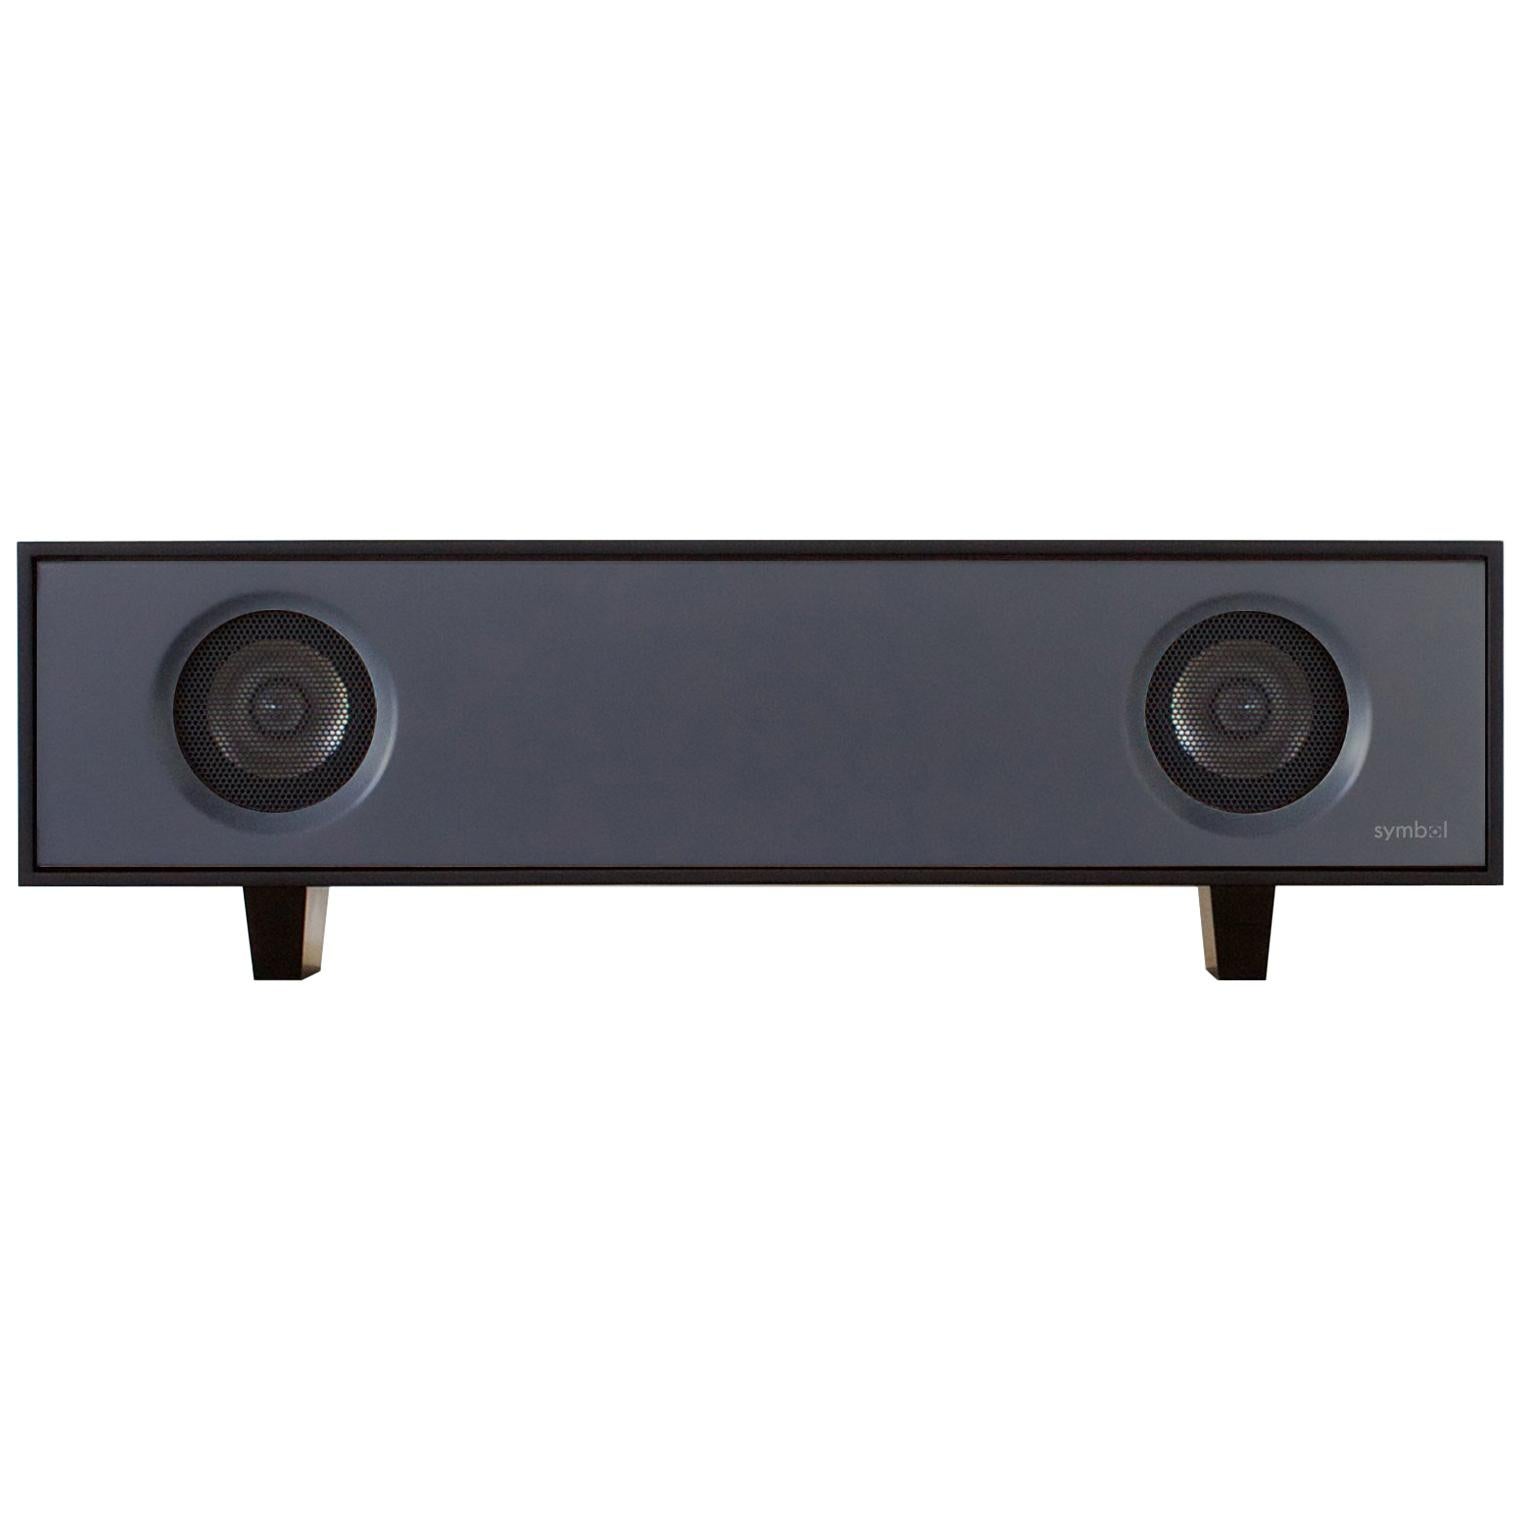 Der HiFi-Tischlautsprecher ist eine verstärkte Lautsprecherbox, die einen reinen, satten Klang von jeder Audioquelle liefert. Das Stereokabinett wird im New Yorker Hudson Valley in einer Vielzahl von Lackierungen in Kombination mit natürlichem